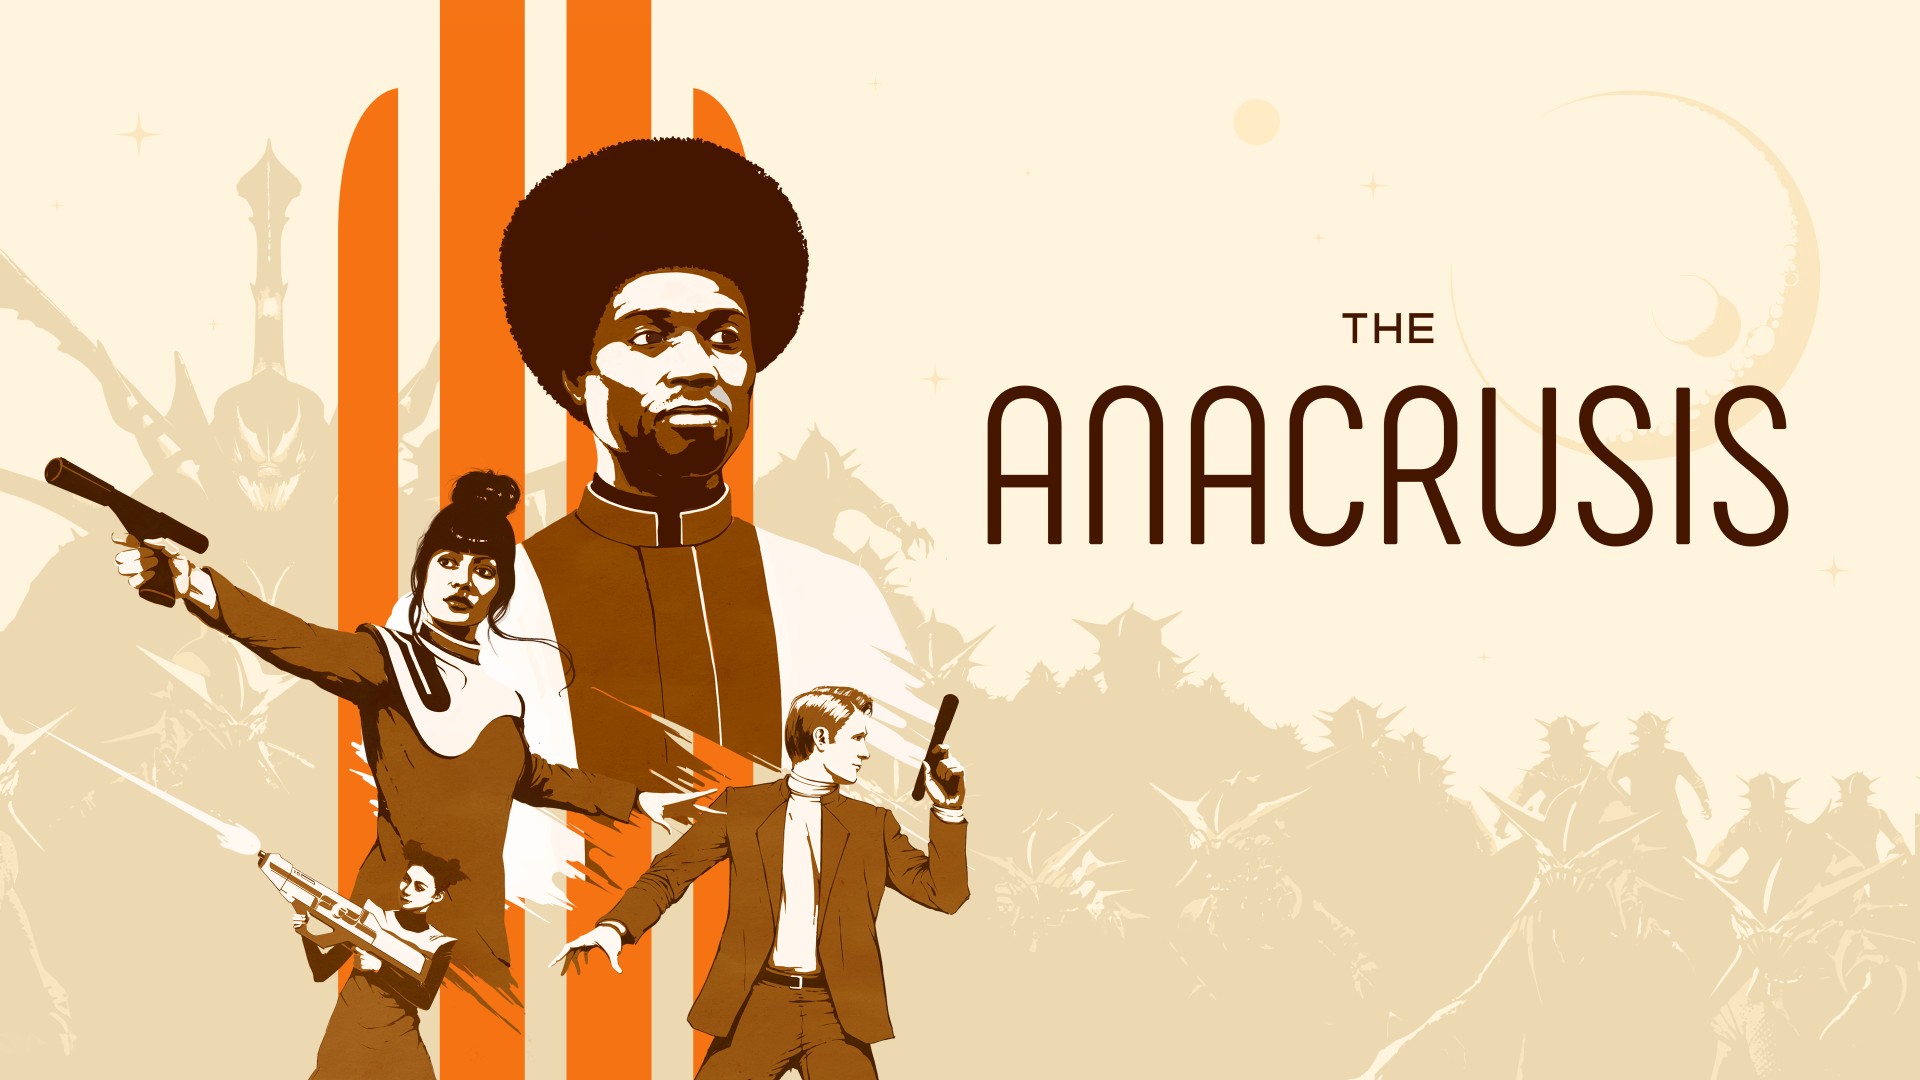 Баннер с героями игры The Anacrusis